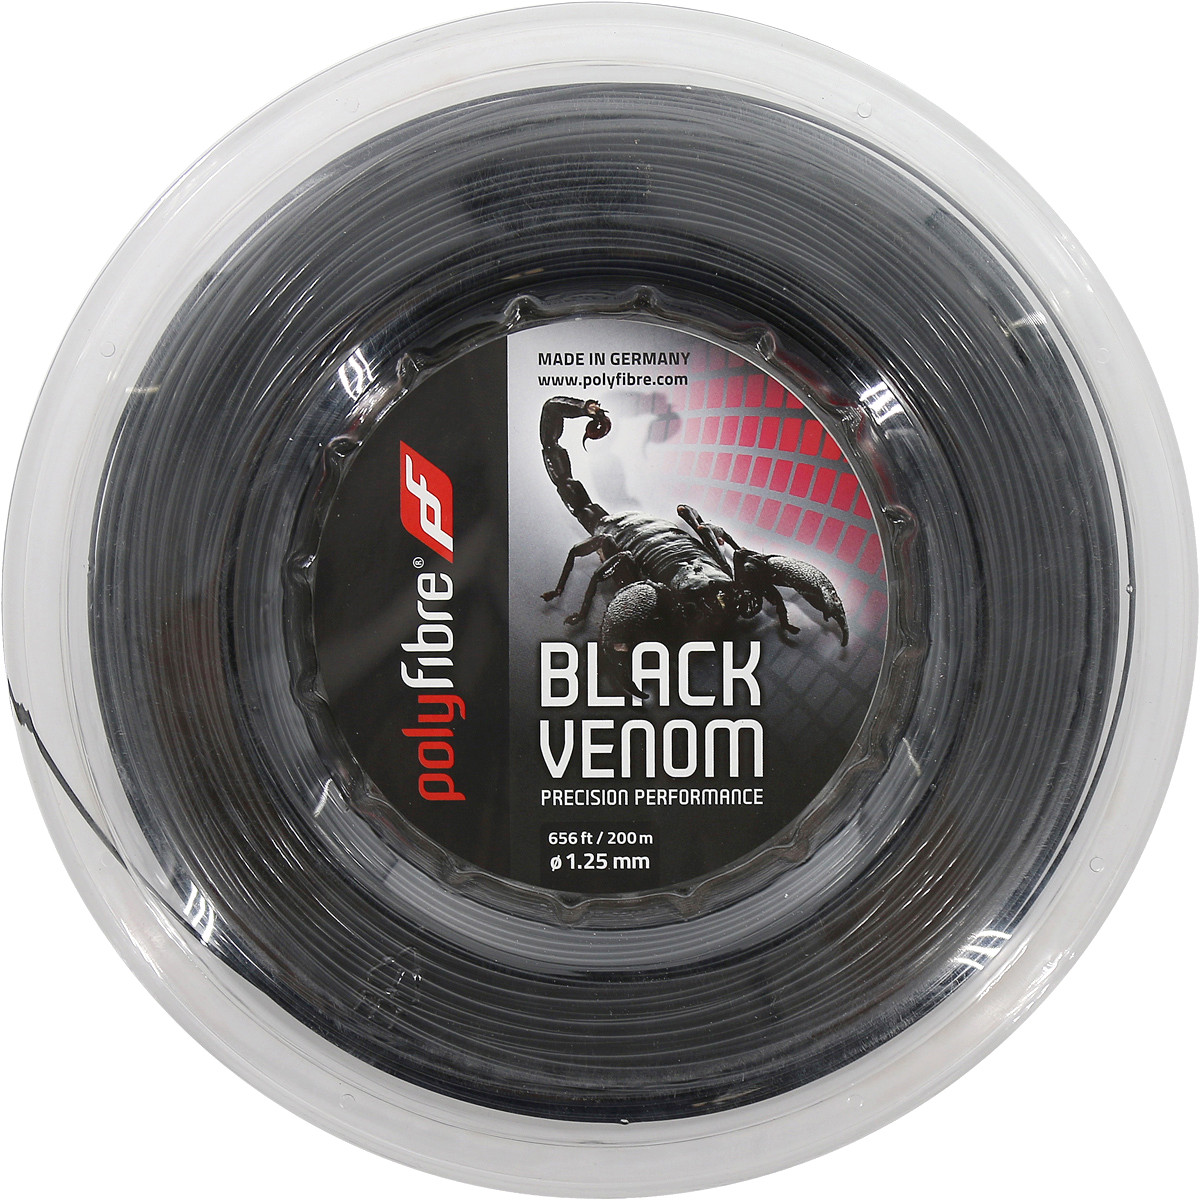 Bobine Polyfibre Black Venom